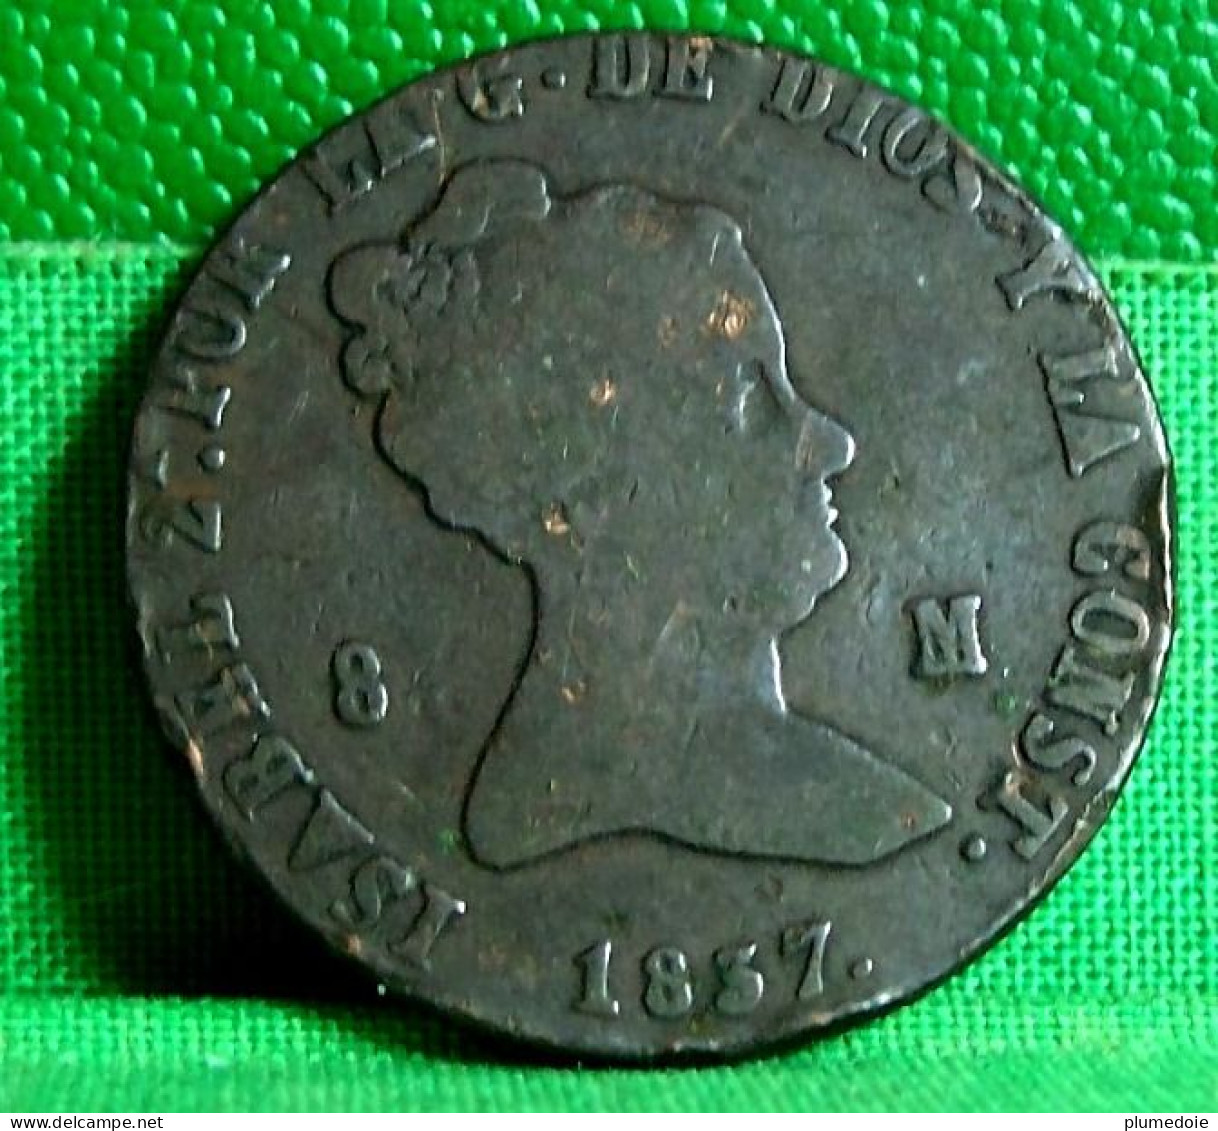 MONNAIE ESPAGNE 8 MARAVEDIS 1837 ISABEL II  , SPAIN OLD COIN  ISABEL 2 REINA DE LAS ESPANAS - Monnaies Provinciales